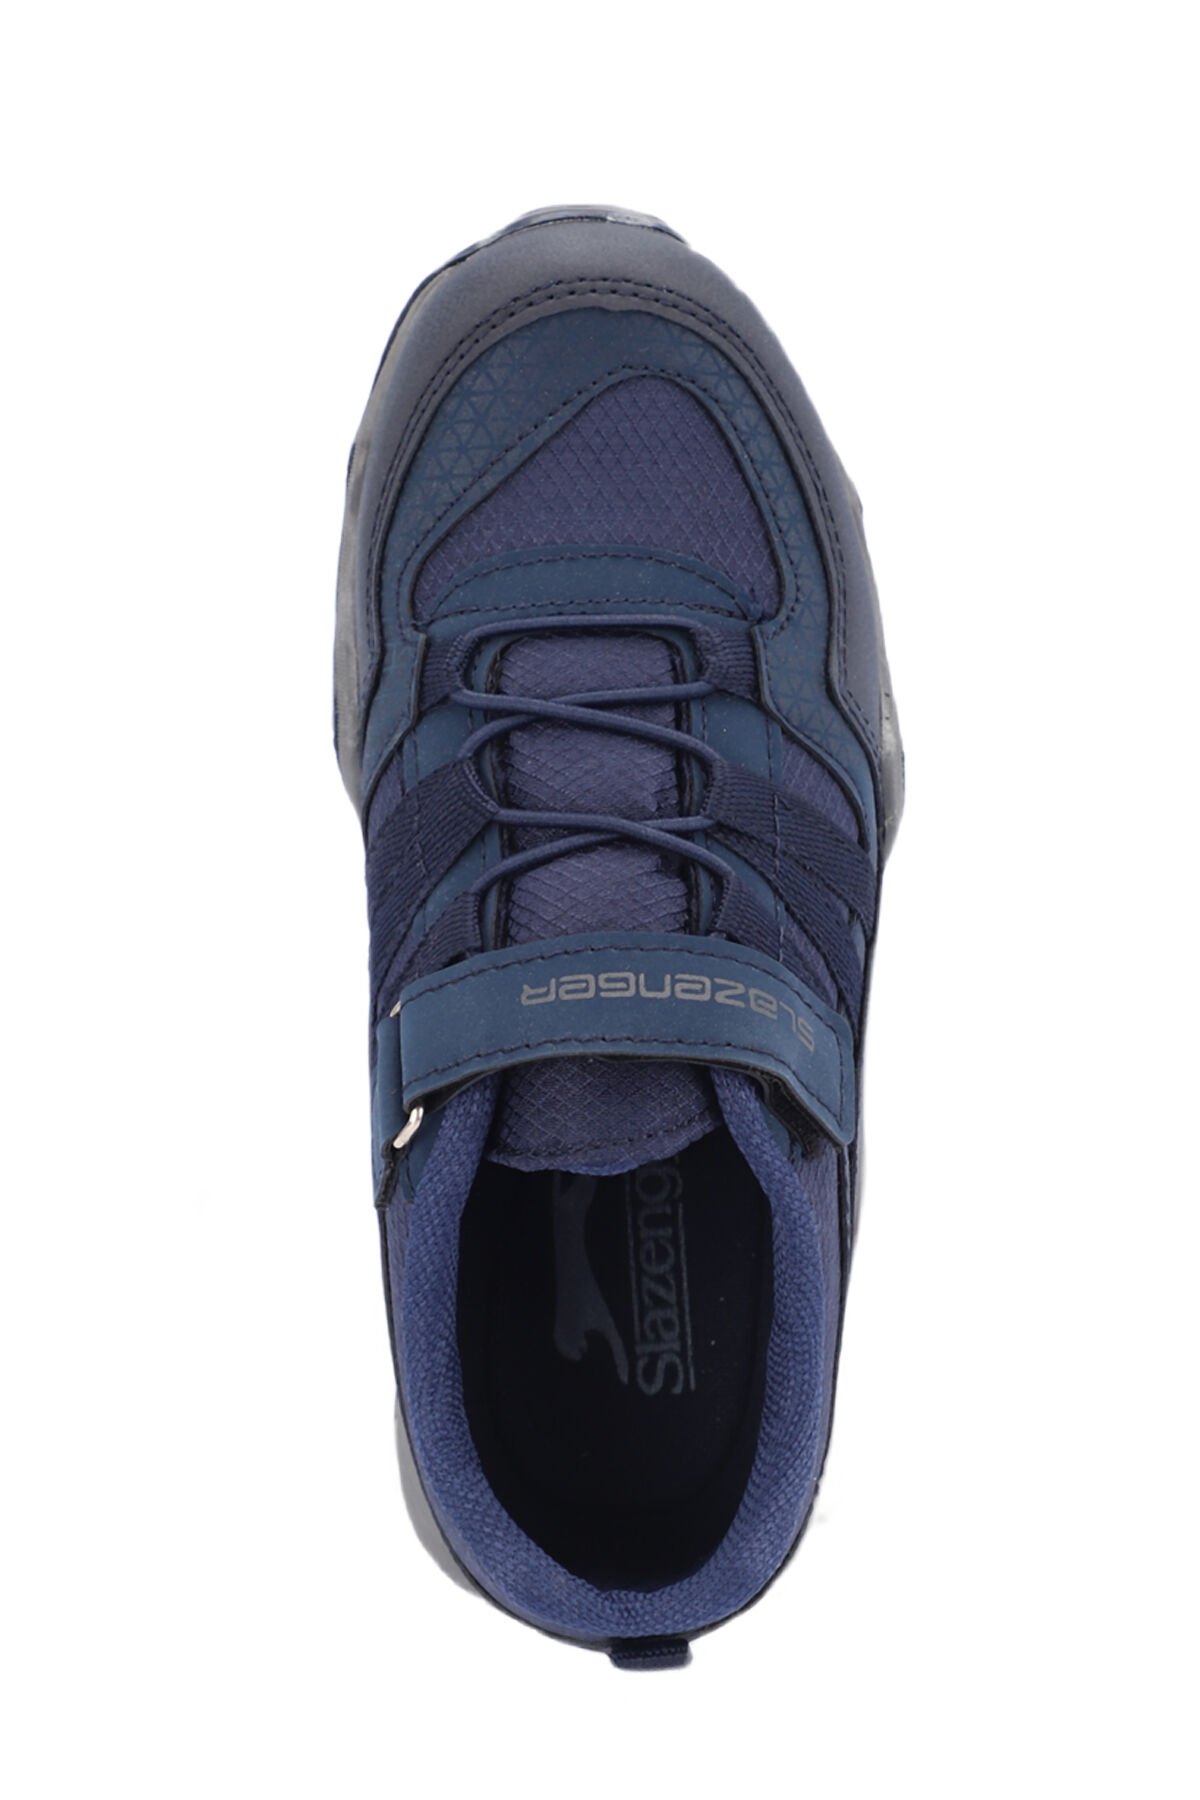 ALDONA Sneaker Erkek Çocuk Ayakkabı Lacivert - Thumbnail